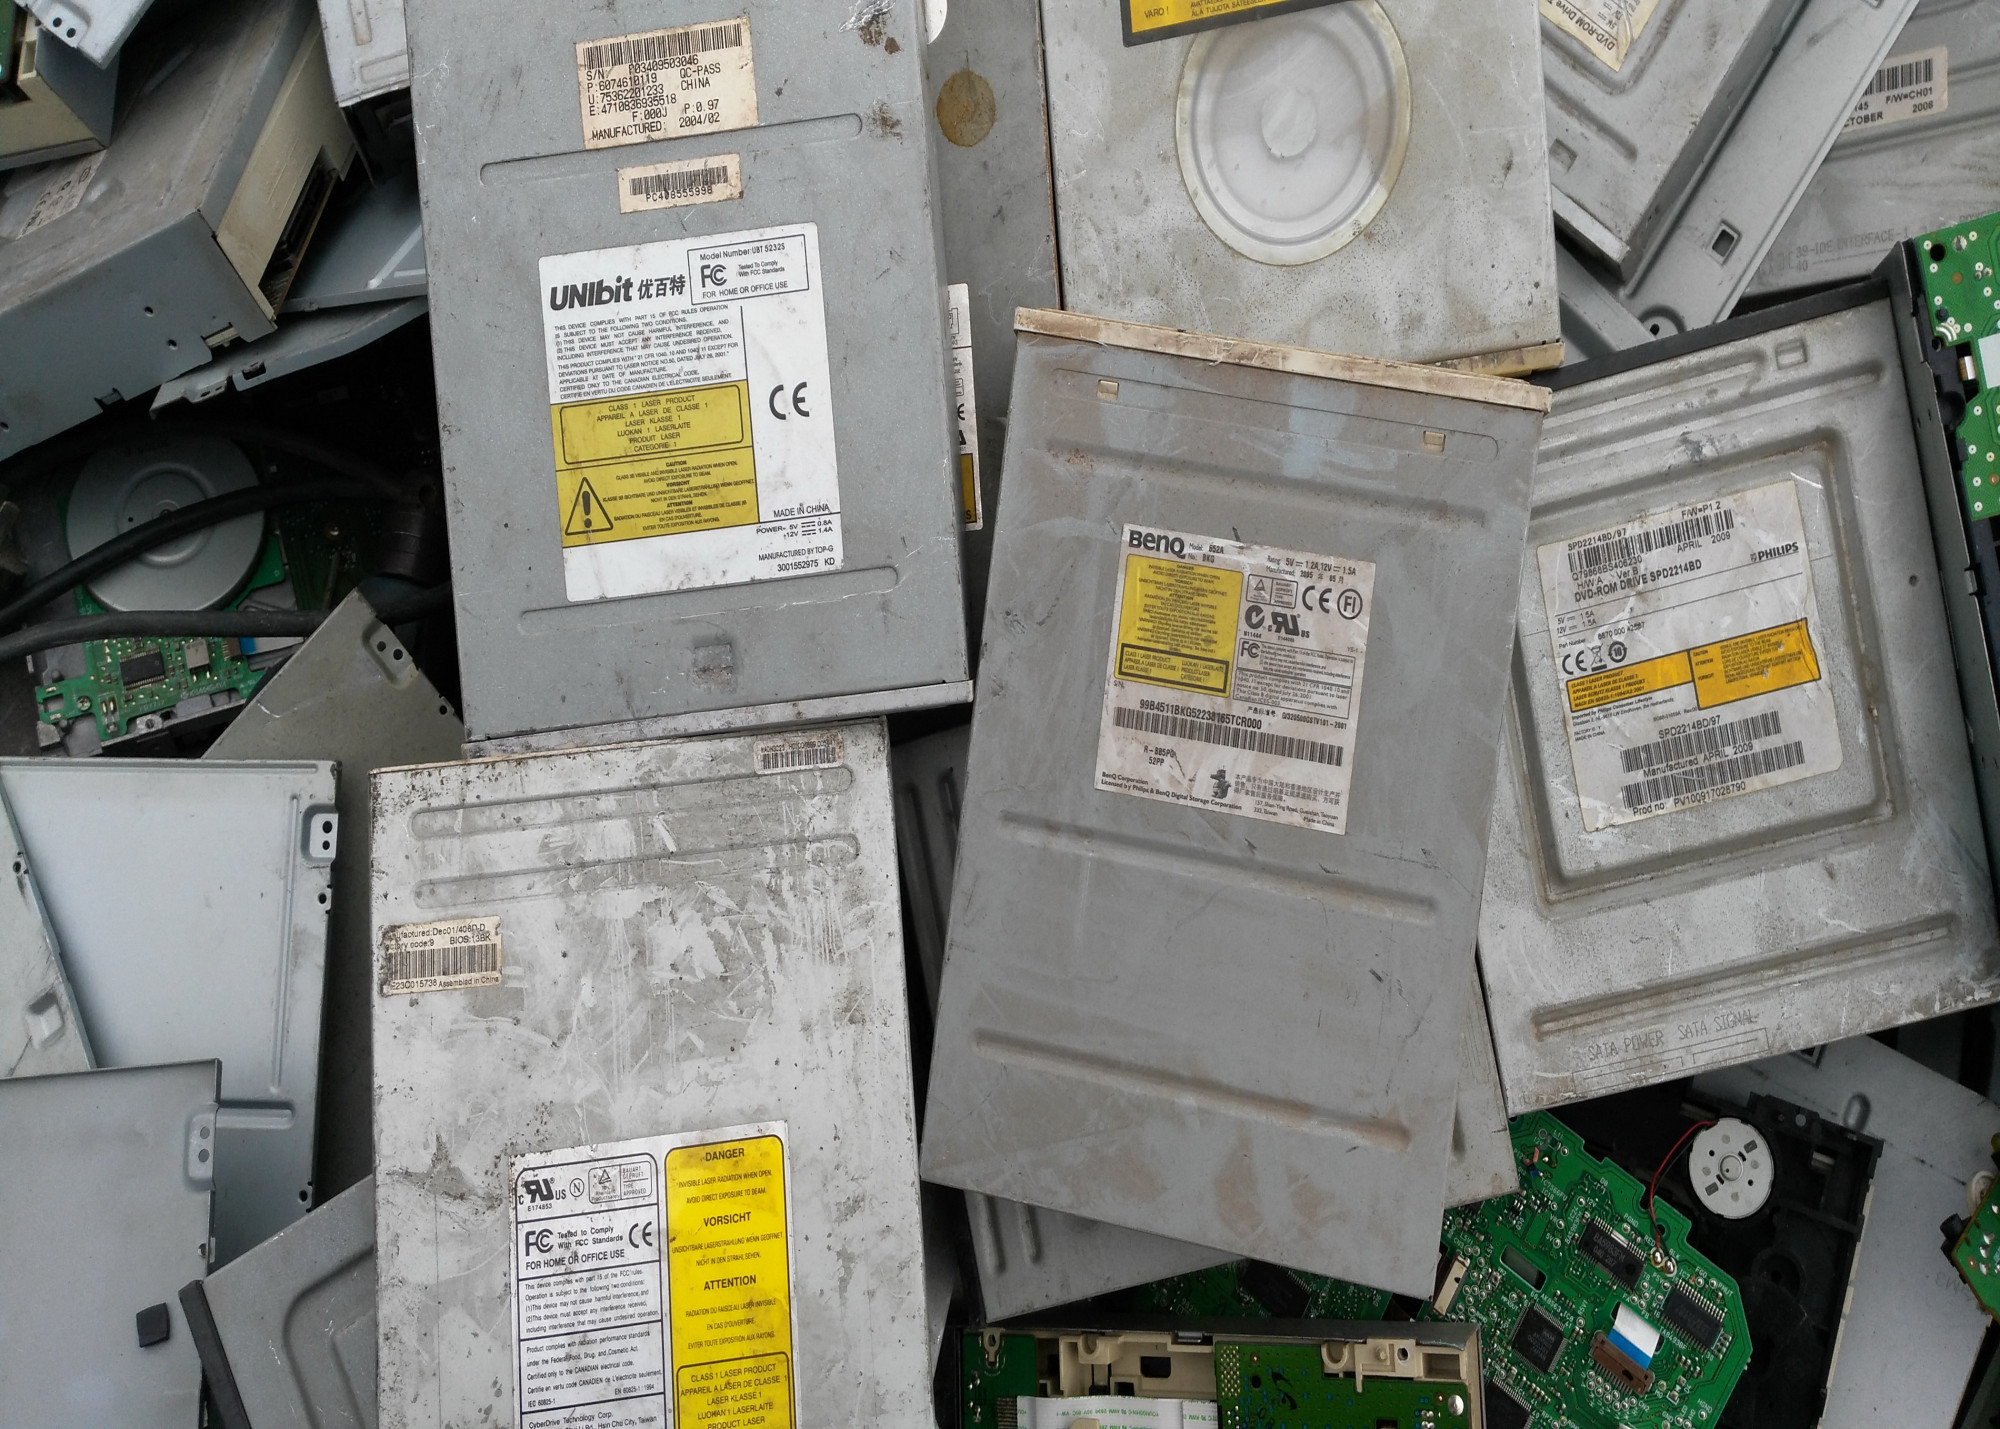 Számítógép-alkatrészek, alaplapok: rengeteg elektronikai hulladék, ami értékes alapanyagokat rejt.